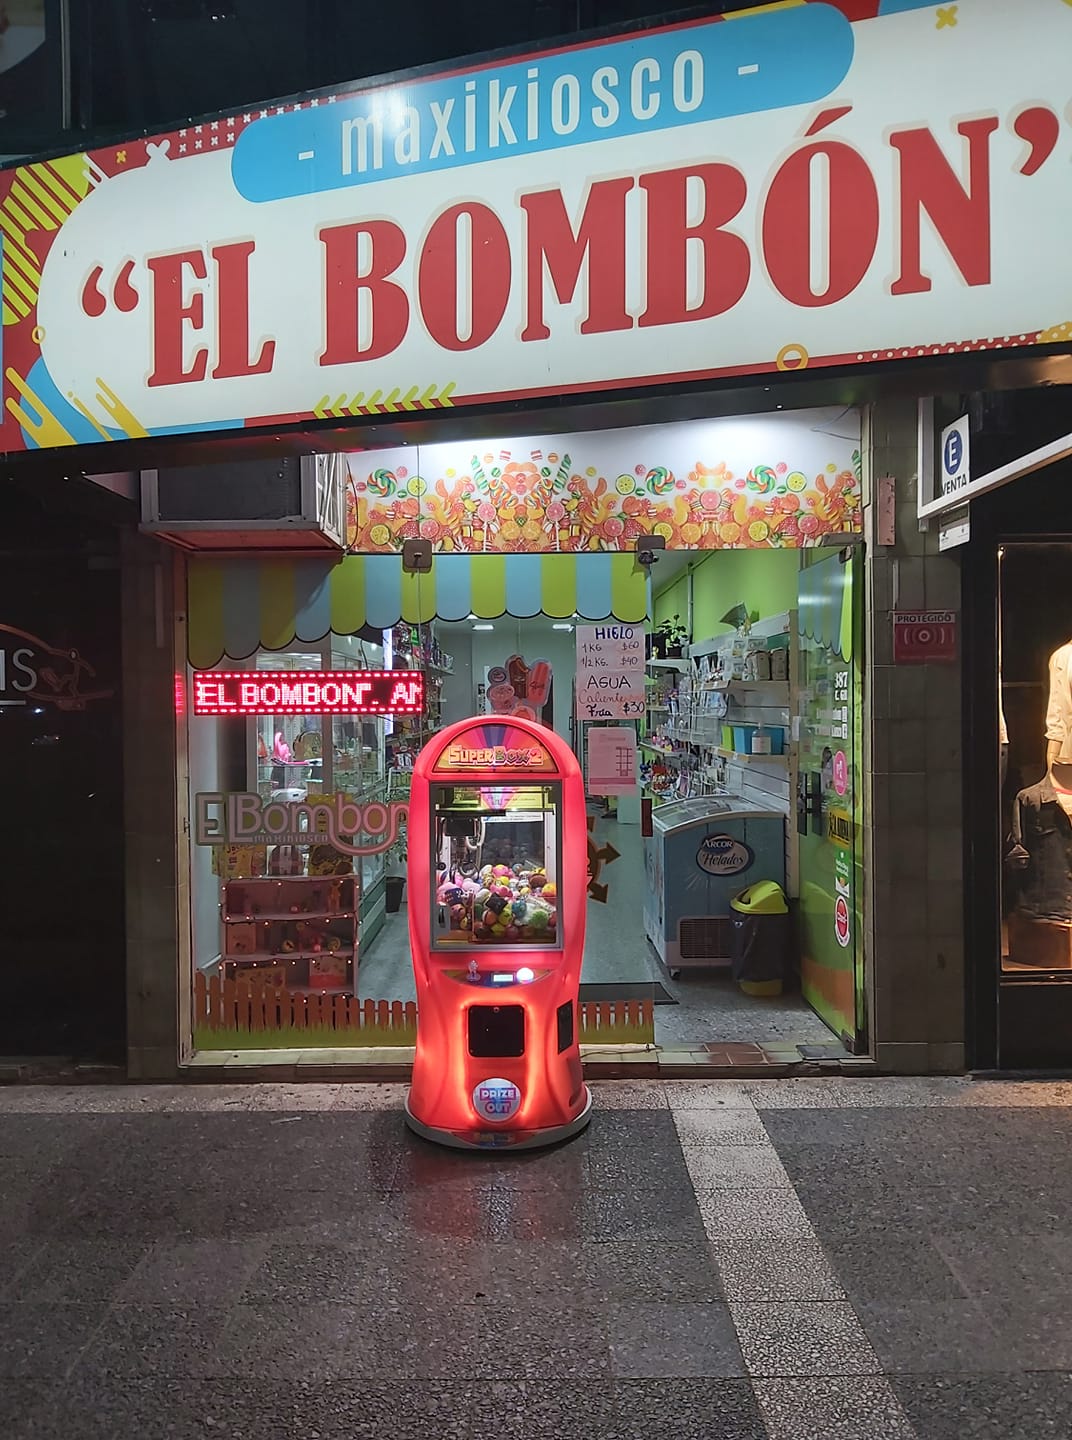 Kiosco el Bombon